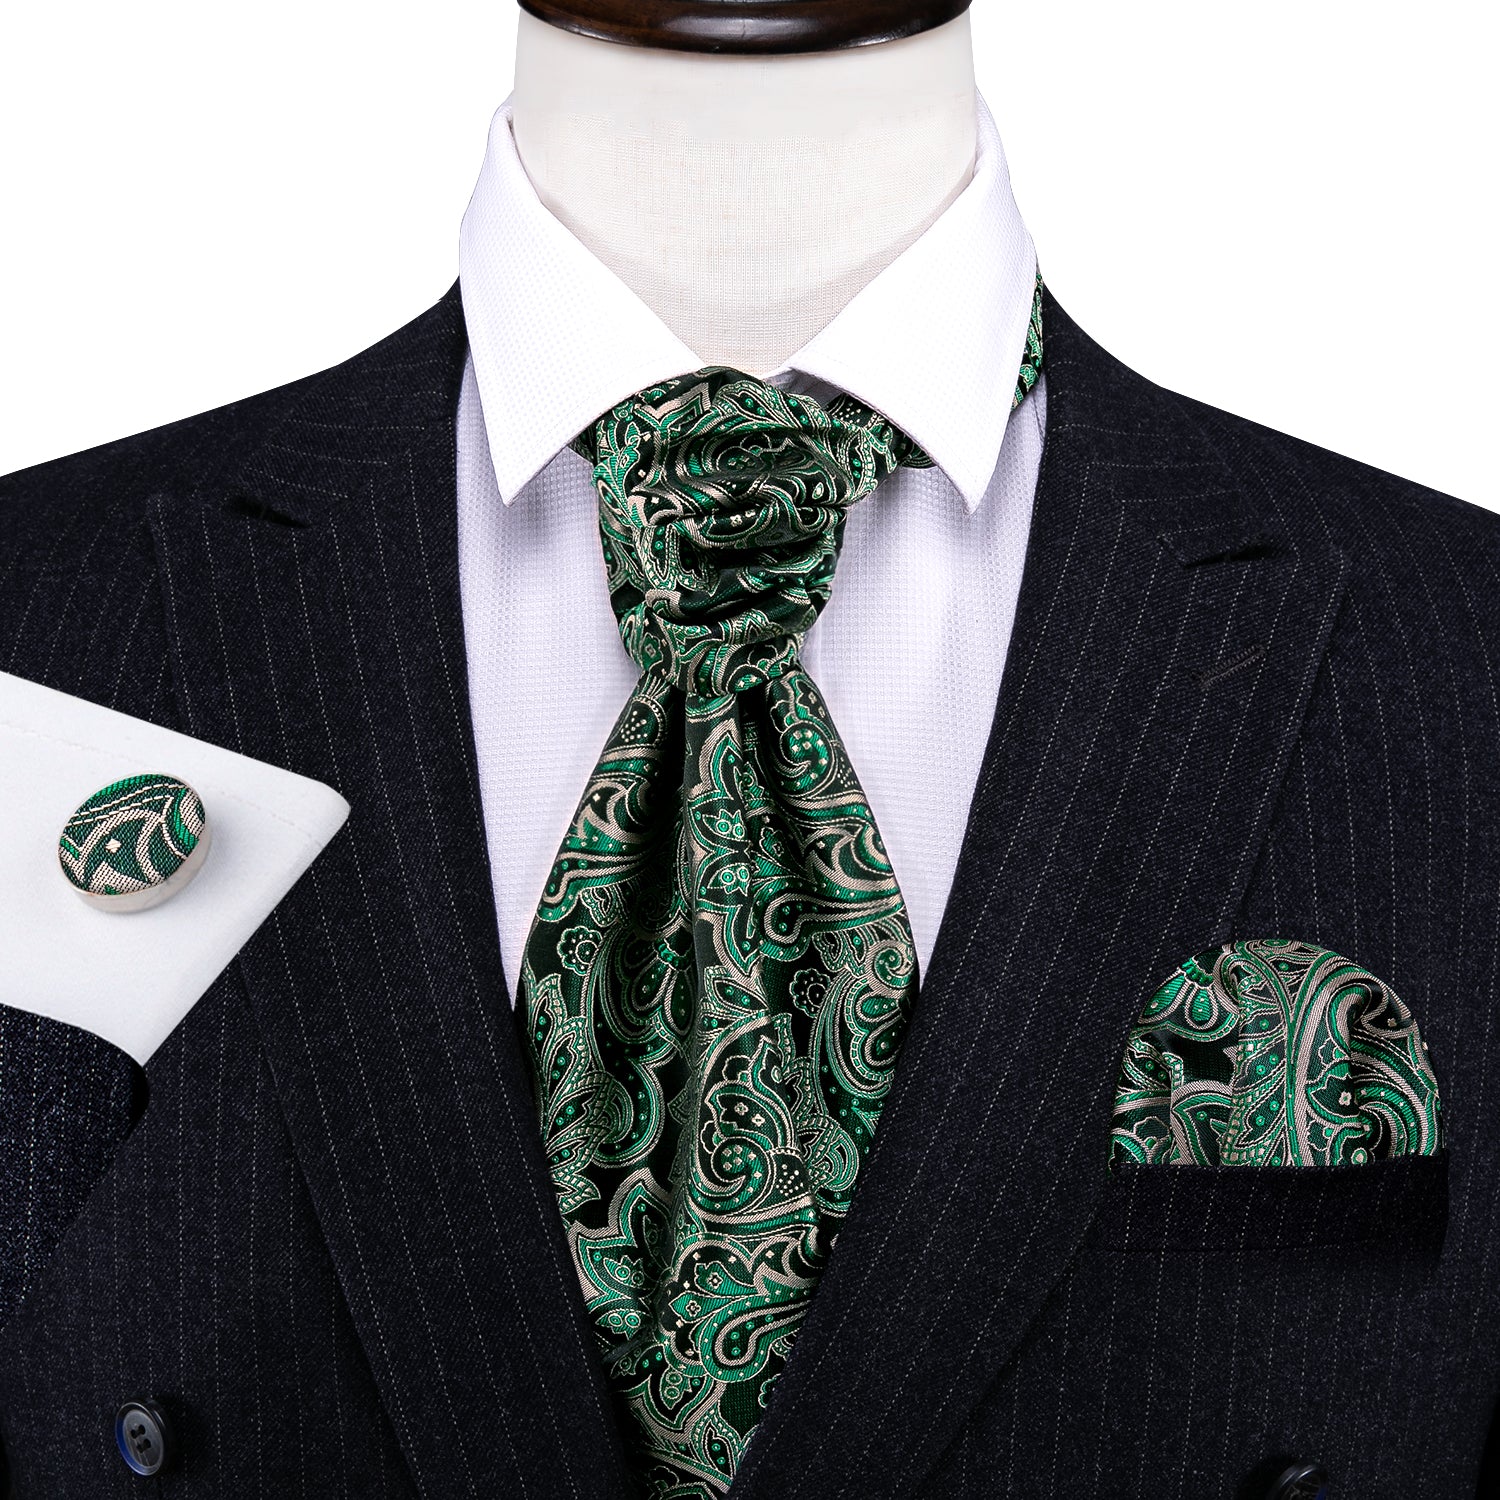 New Novelty Green Paisley Ascot Handkerchief Cufflinks